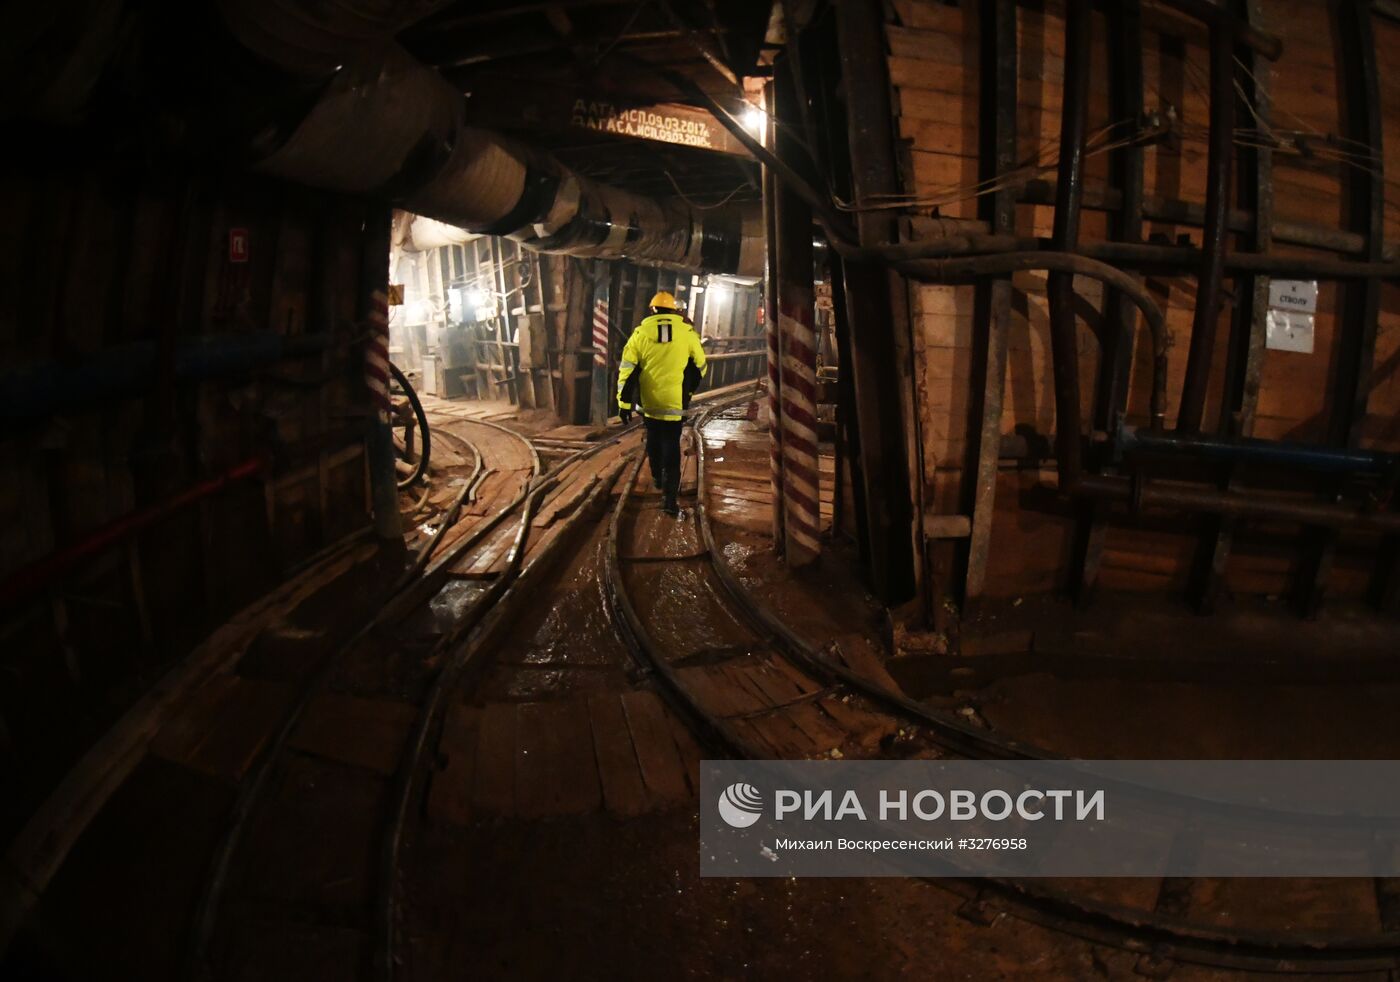 Строительство станции метро "Нижняя Масловка"